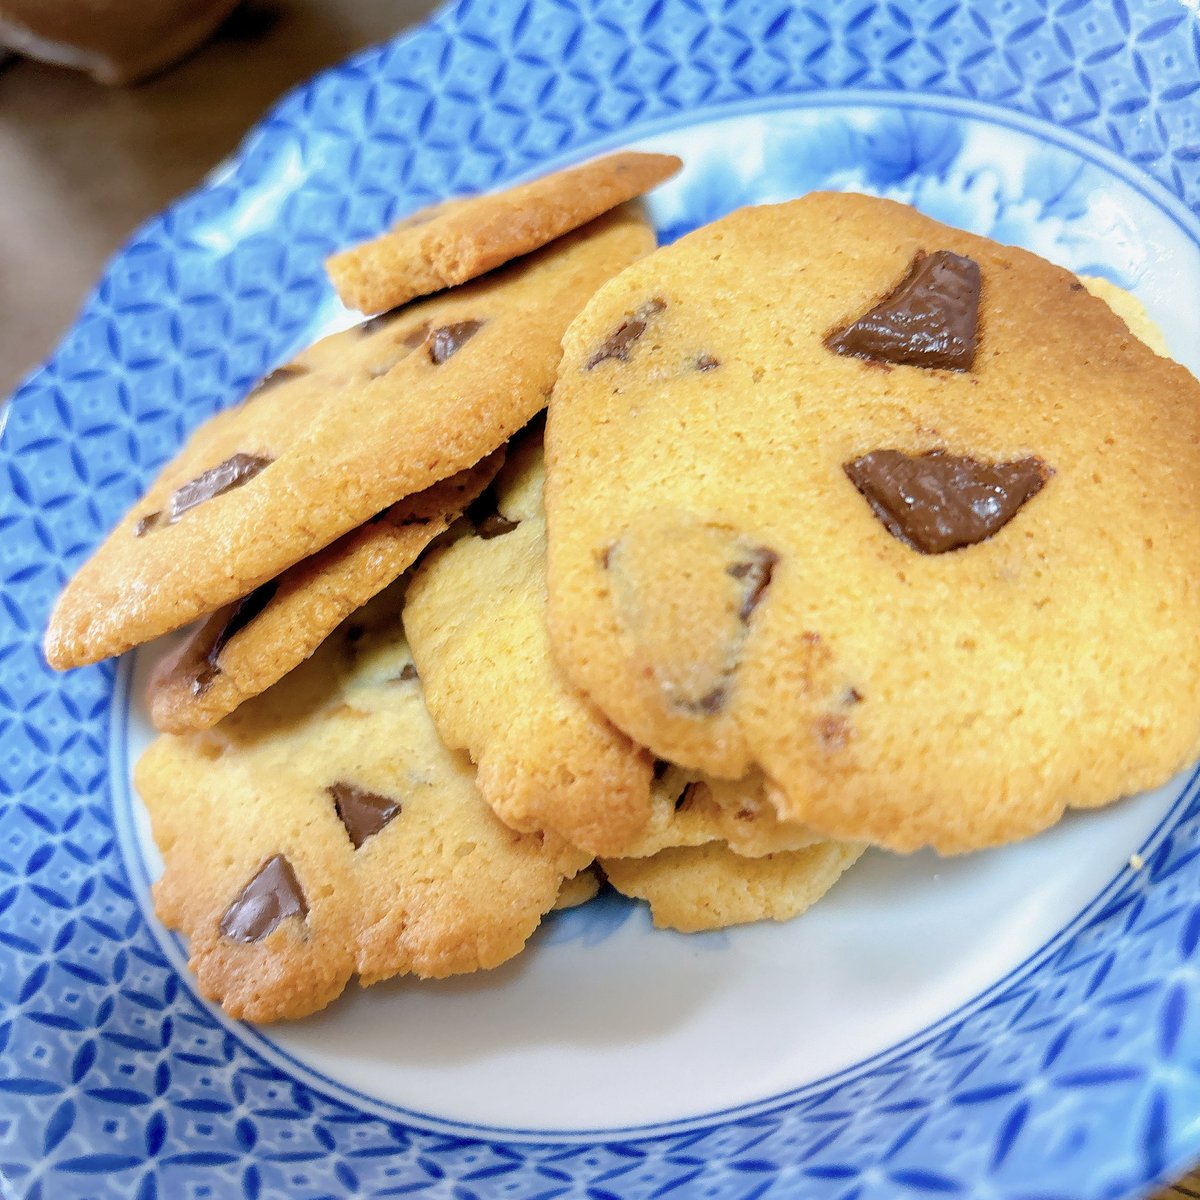 チョコクッキー作った(•ㅂ•)و

今恐竜クッキー焼いてる🦖🦖